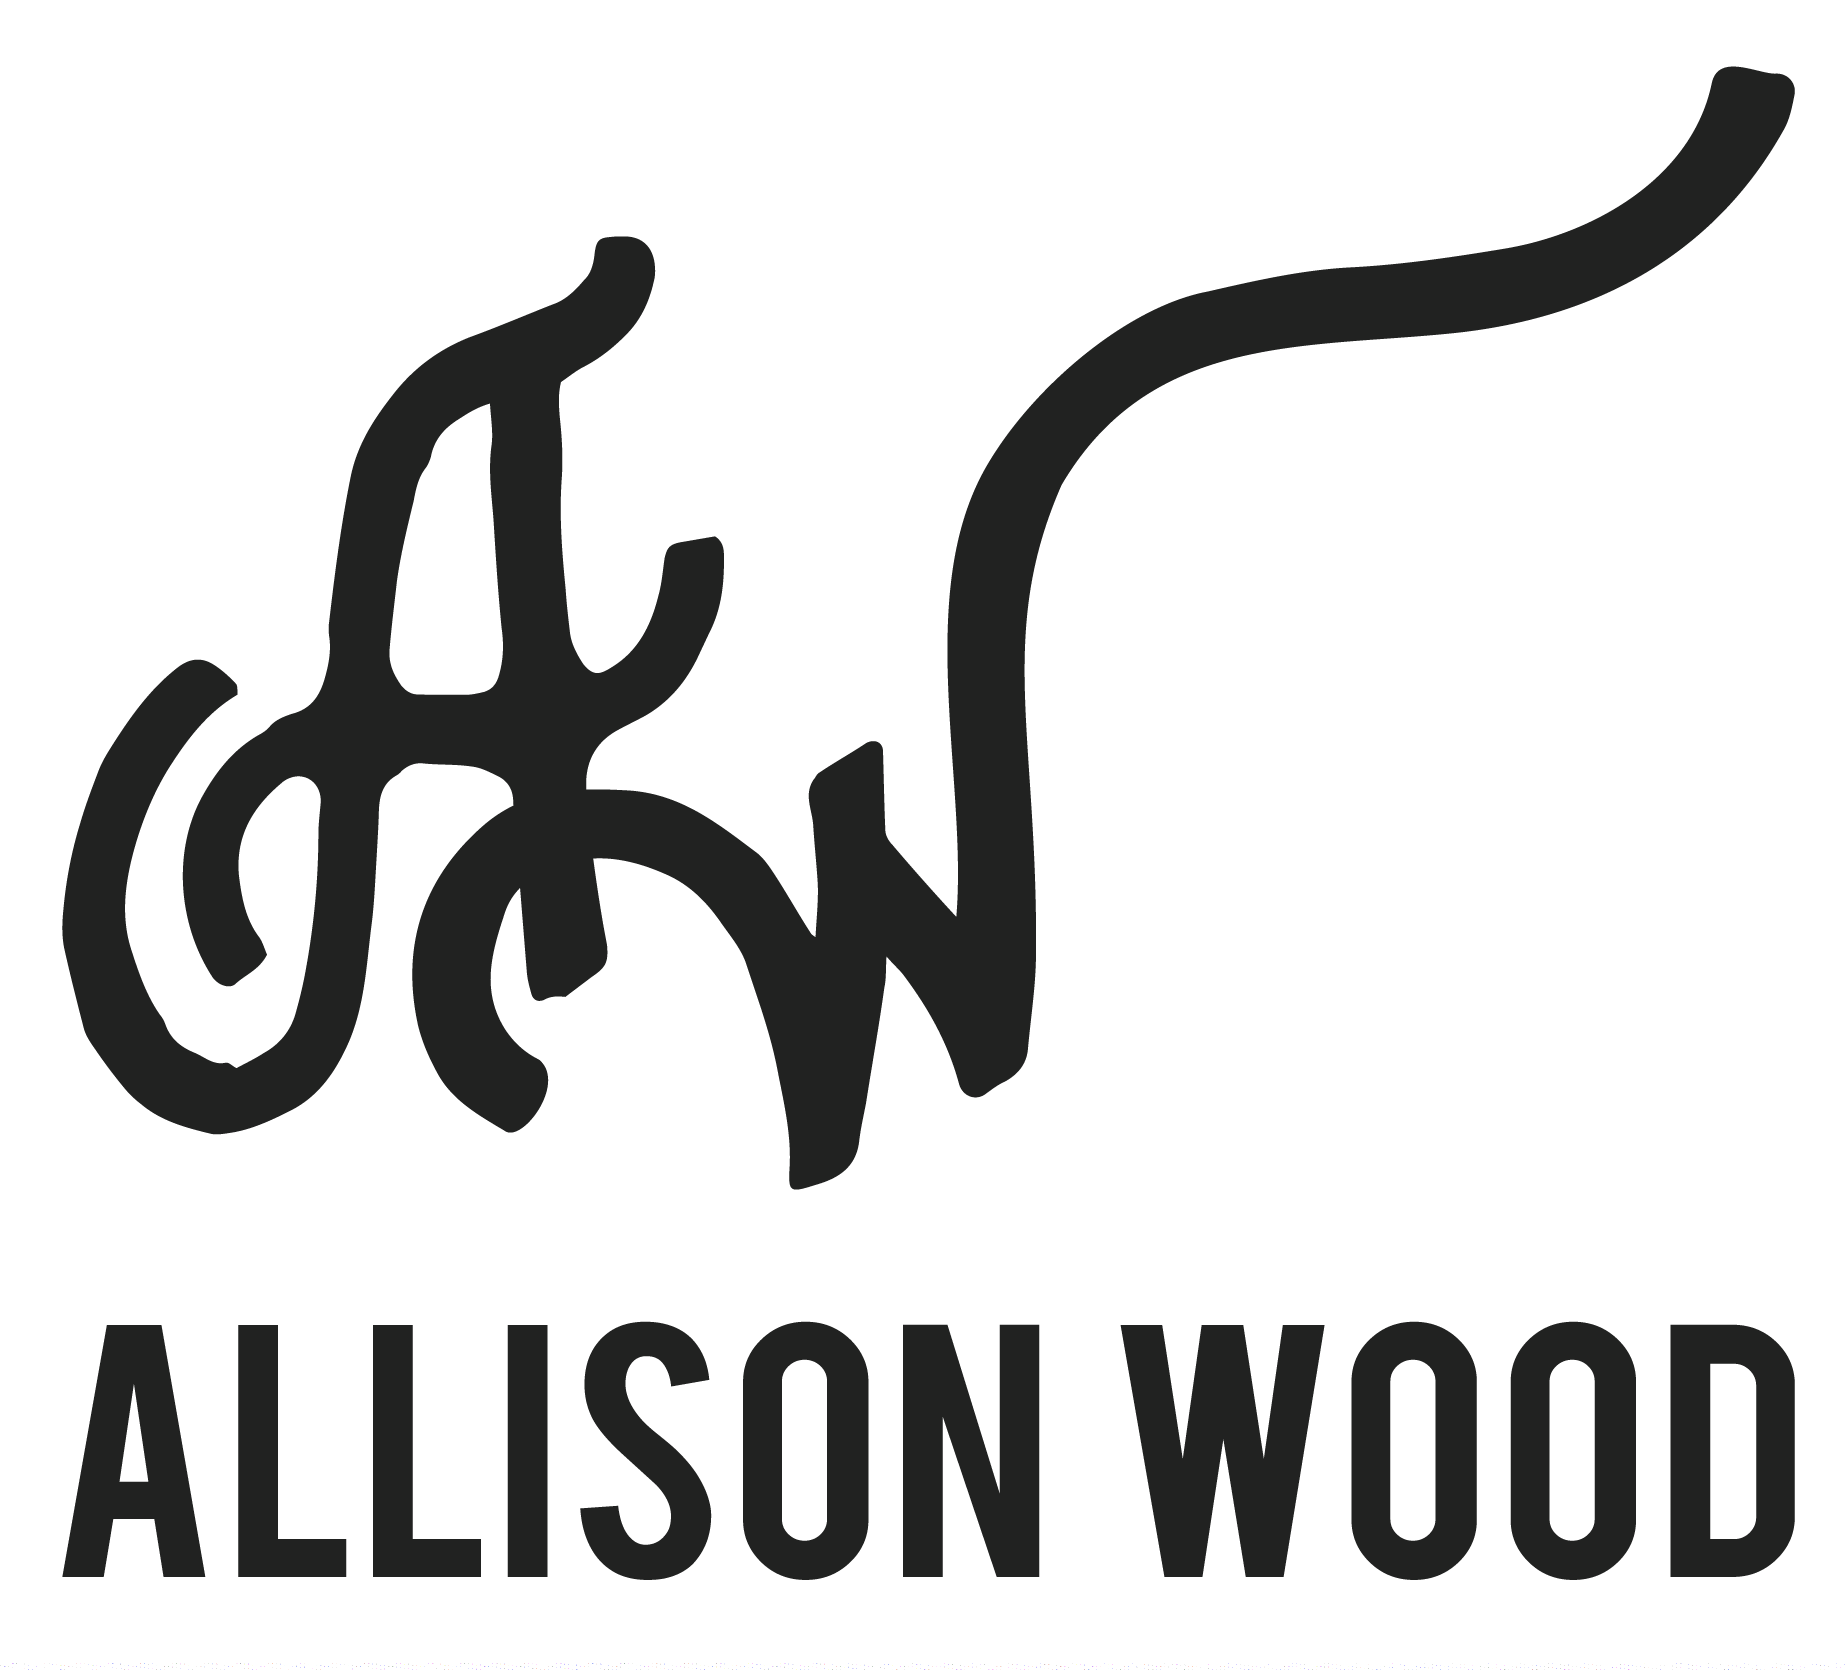 Allison Wood